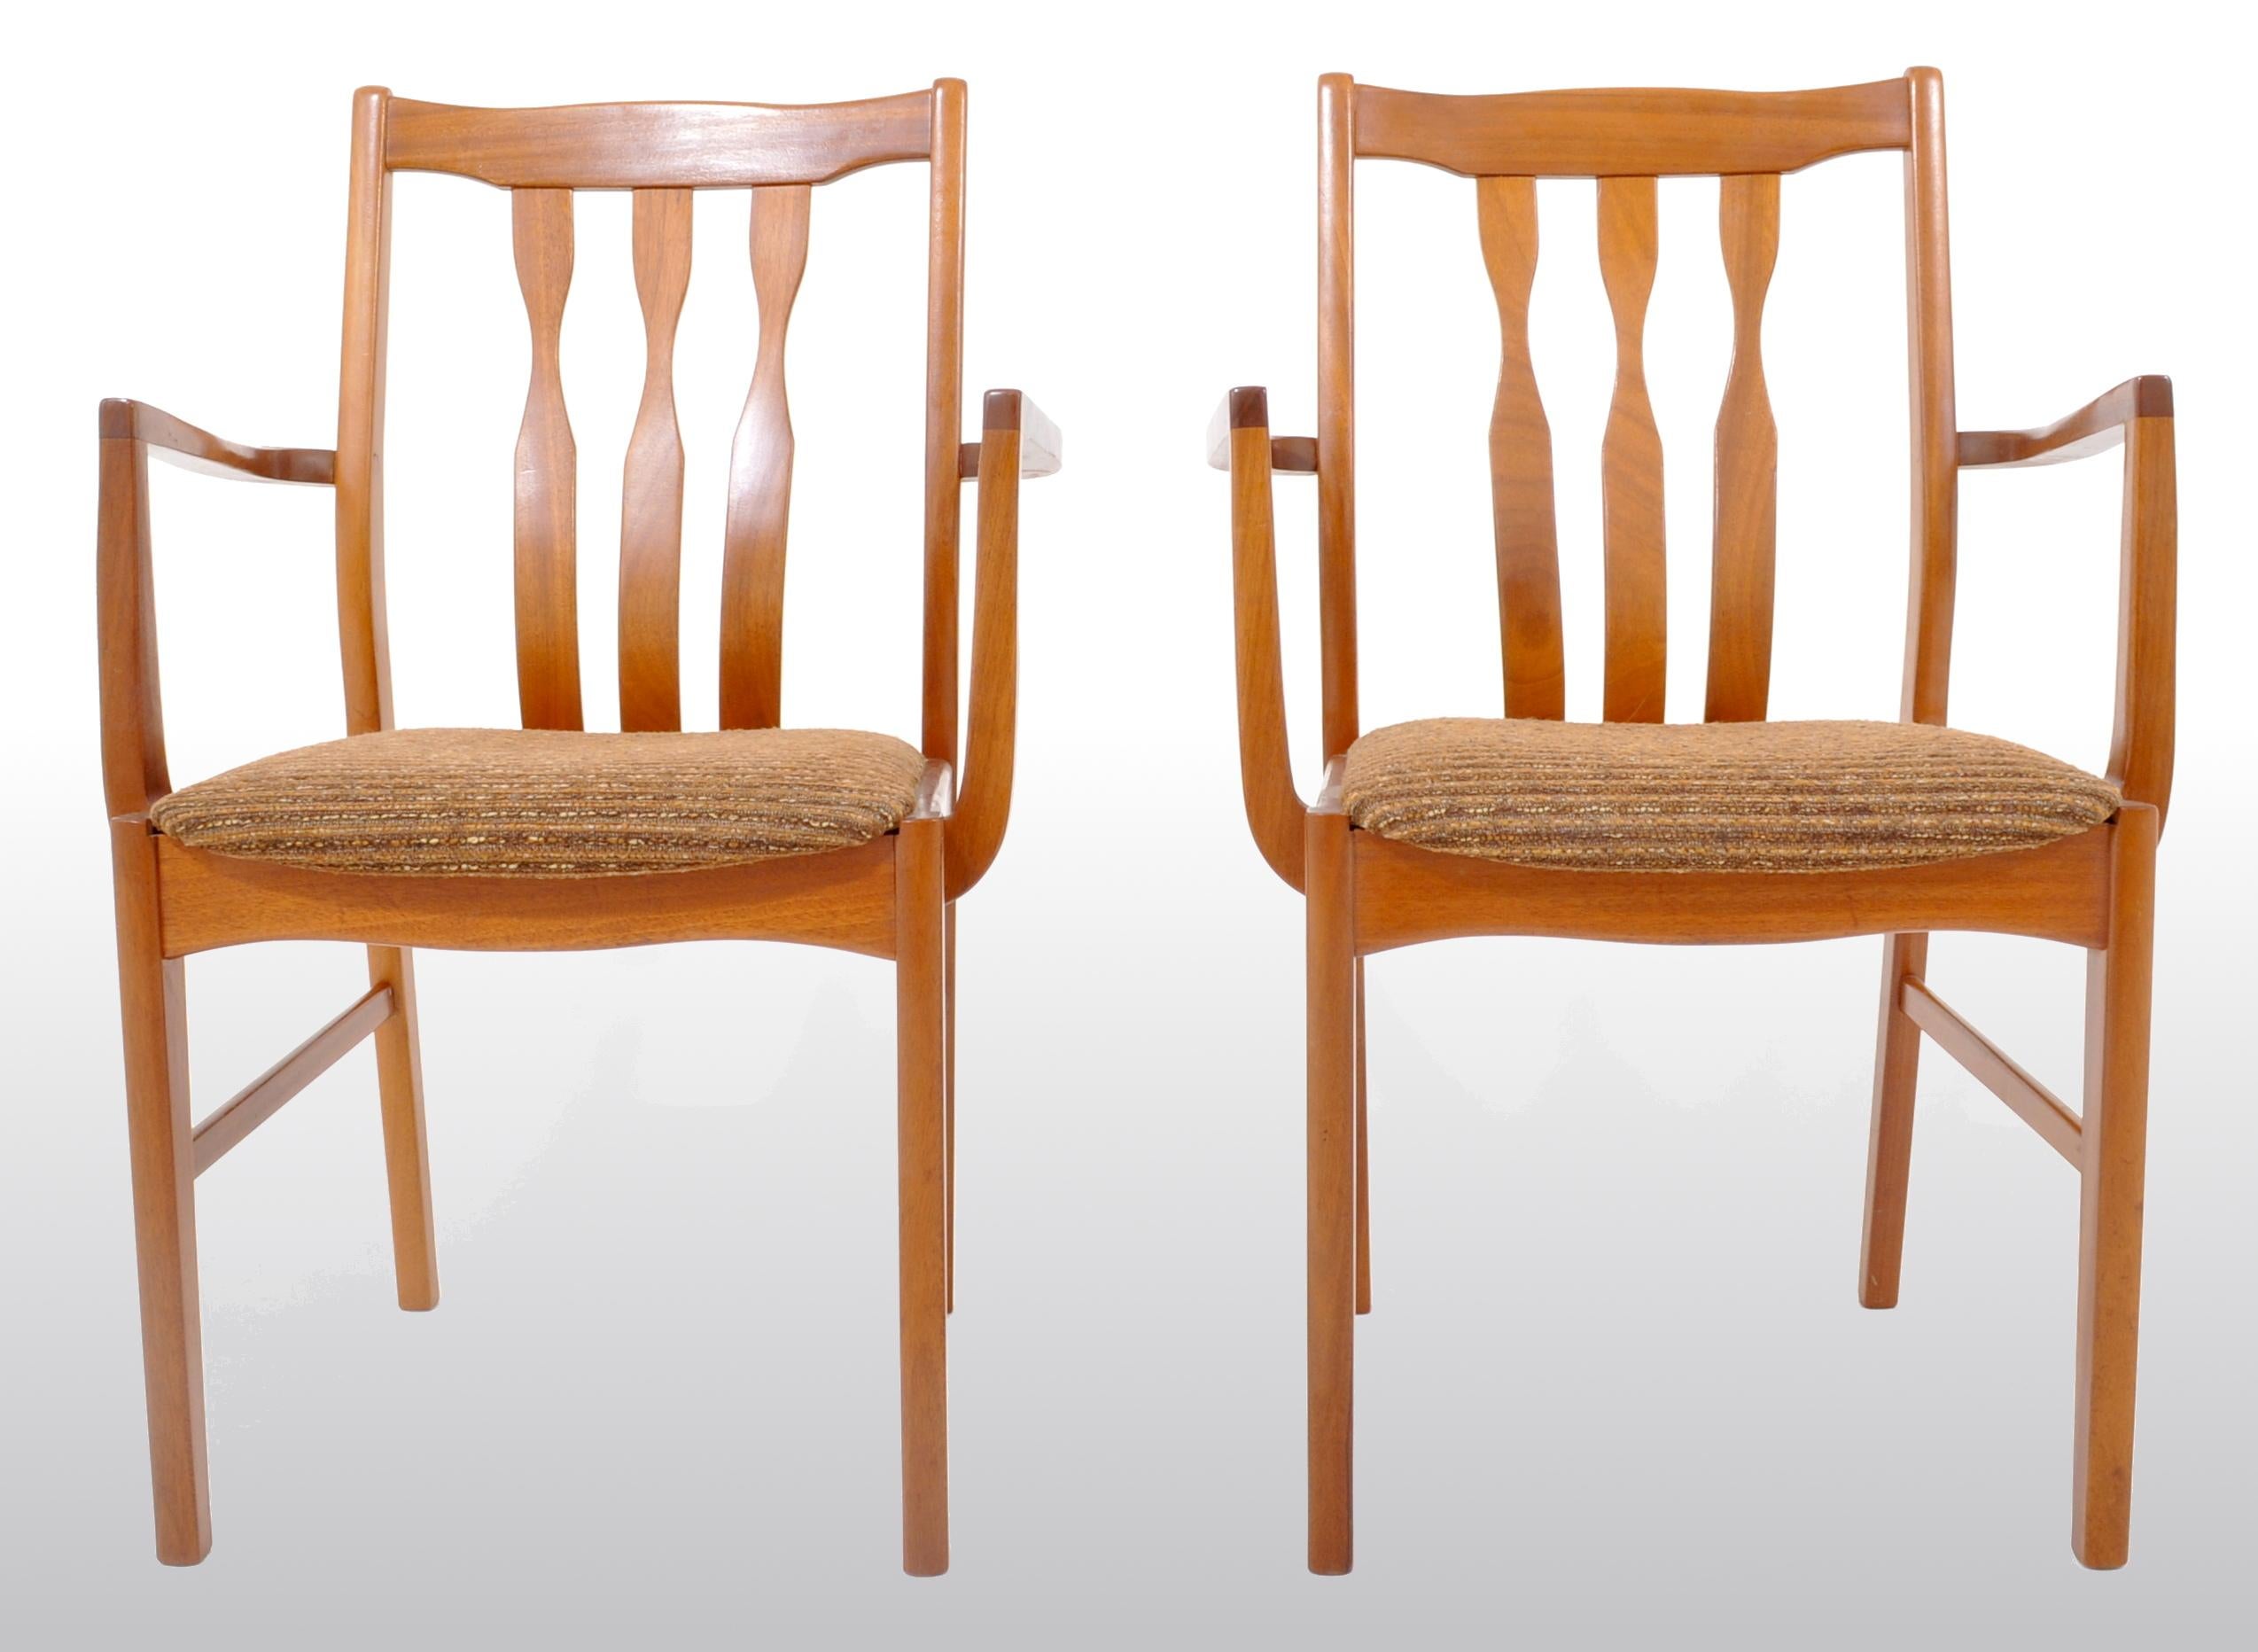 Paire de fauteuils capitaine/armoires en teck, années 1960. Les chaises sont dotées de trois dossiers et d'accoudoirs en forme, avec le tissu mohair texturé d'origine.